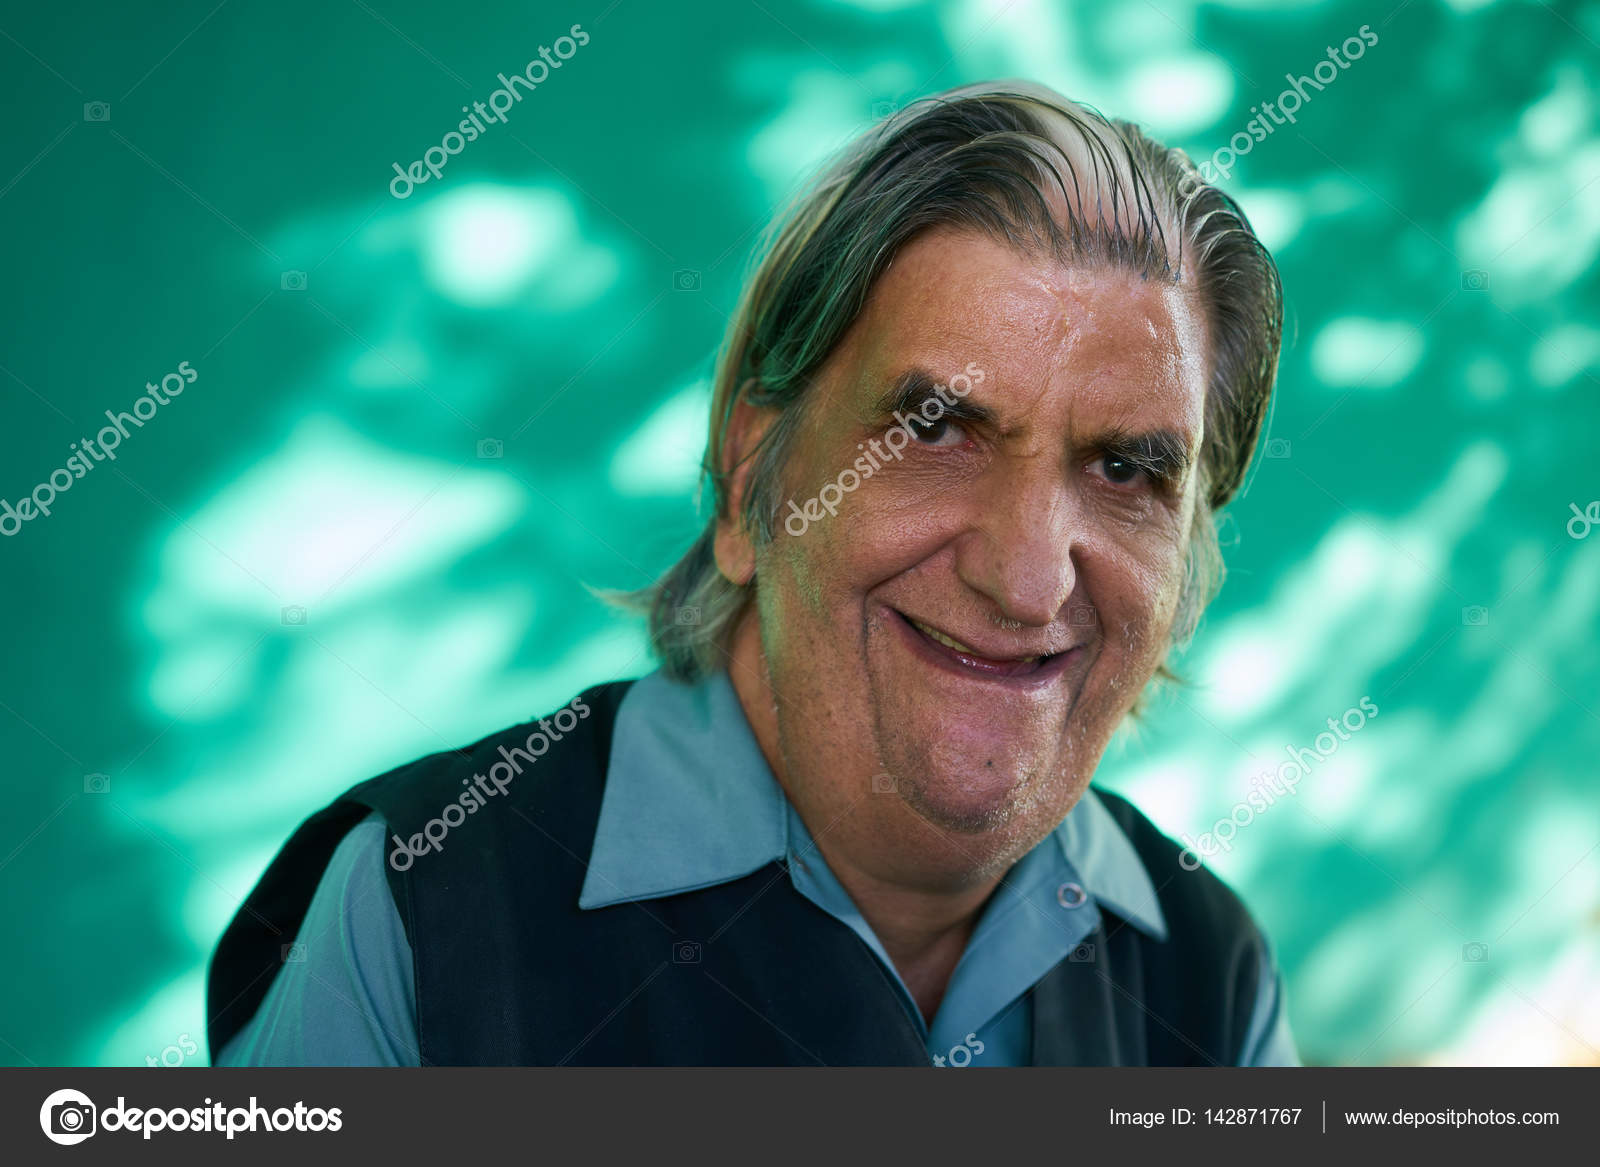 Real People Portrait Homme âgé drôle riant à la caméra image libre